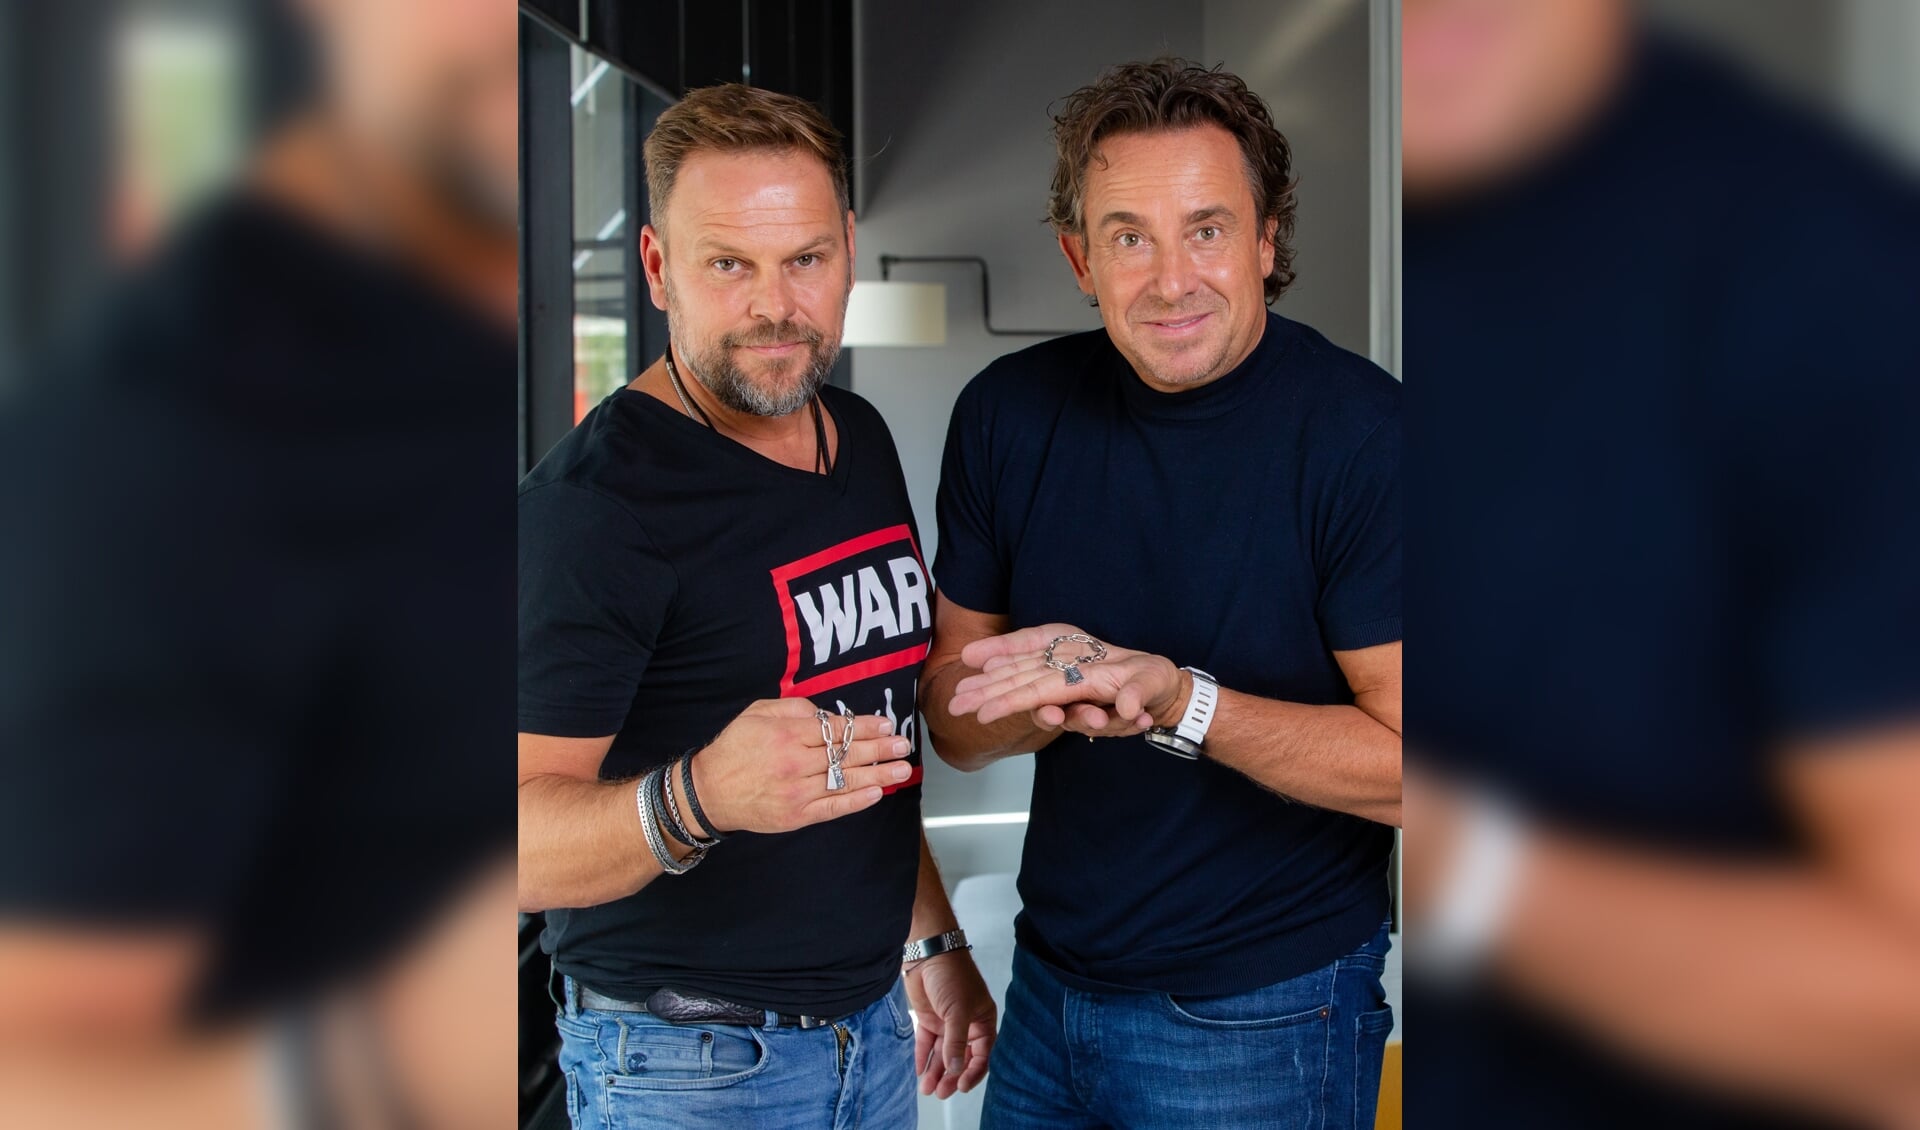 Ontwerper Bas Verdonk en Marco Borsato showen de speciale bracelet (Foto: Helene Wiesenhaan)